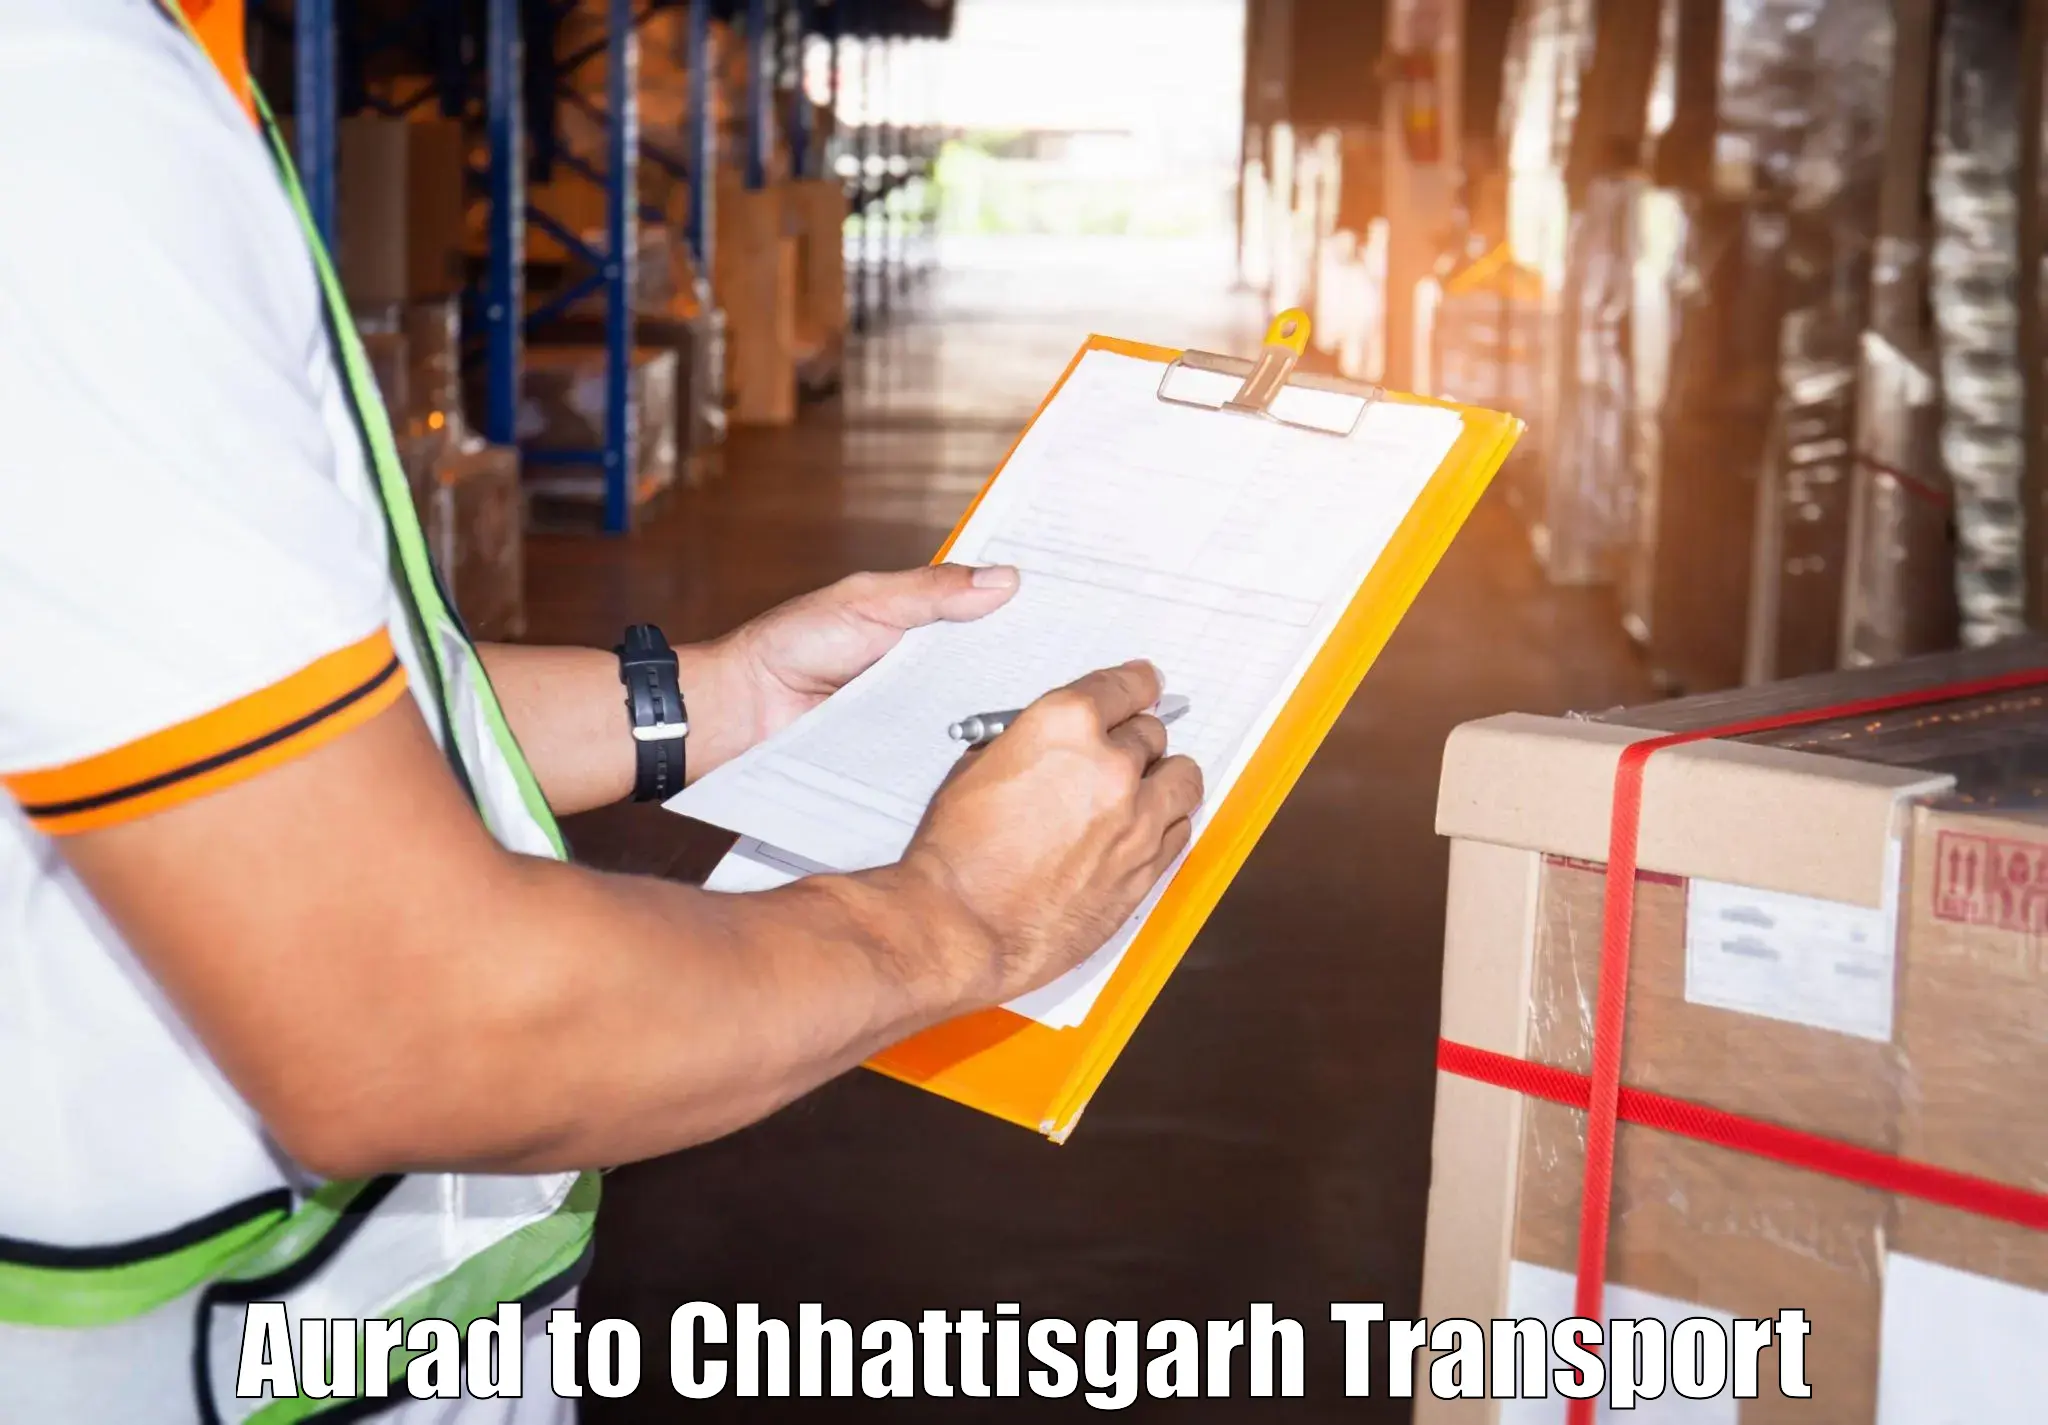 Transportation solution services in Aurad to Patna Chhattisgarh